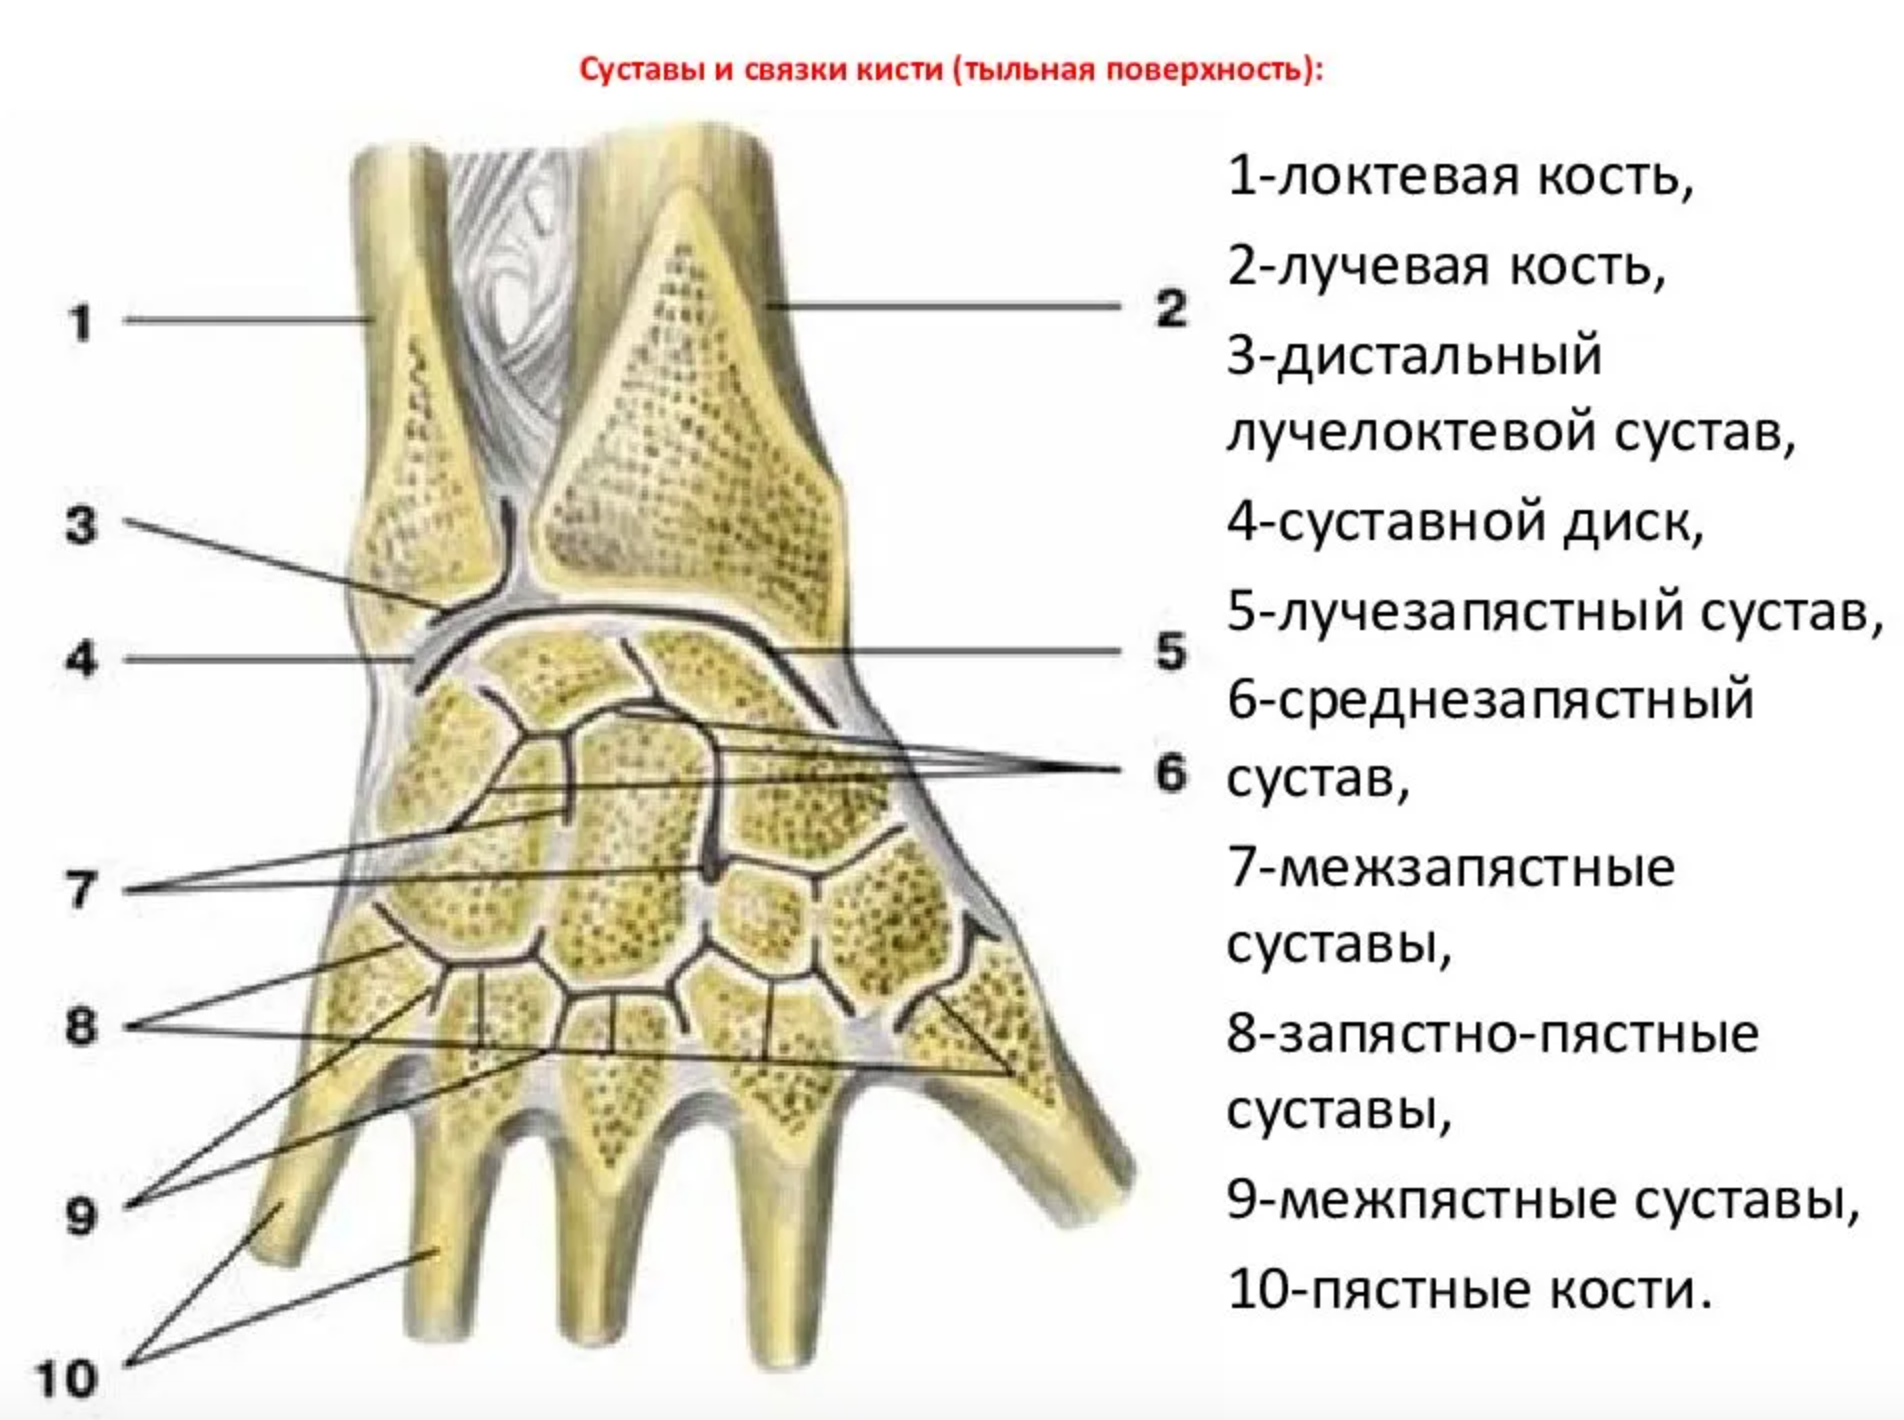 Суставной диск лучезапястного сустава. Дистальный лучелоктевой сустав анатомия связки. Среднезапястный сустав связки. Лучезапястный сустав анатомия суставные поверхности. Поверхность запястья